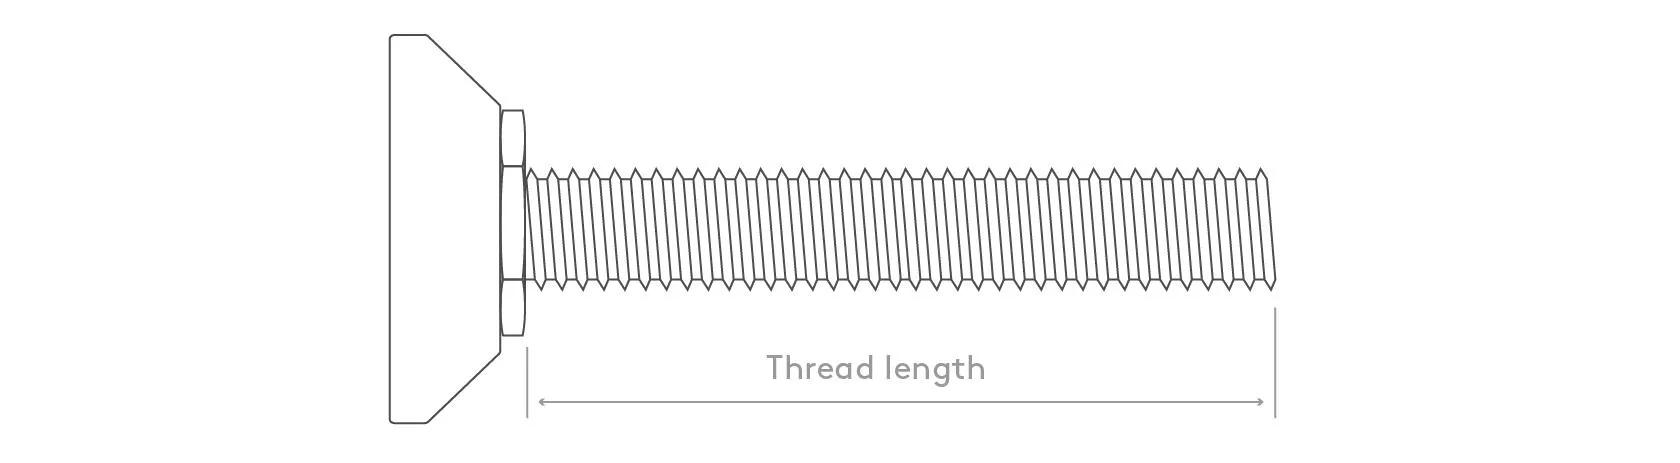 thread length